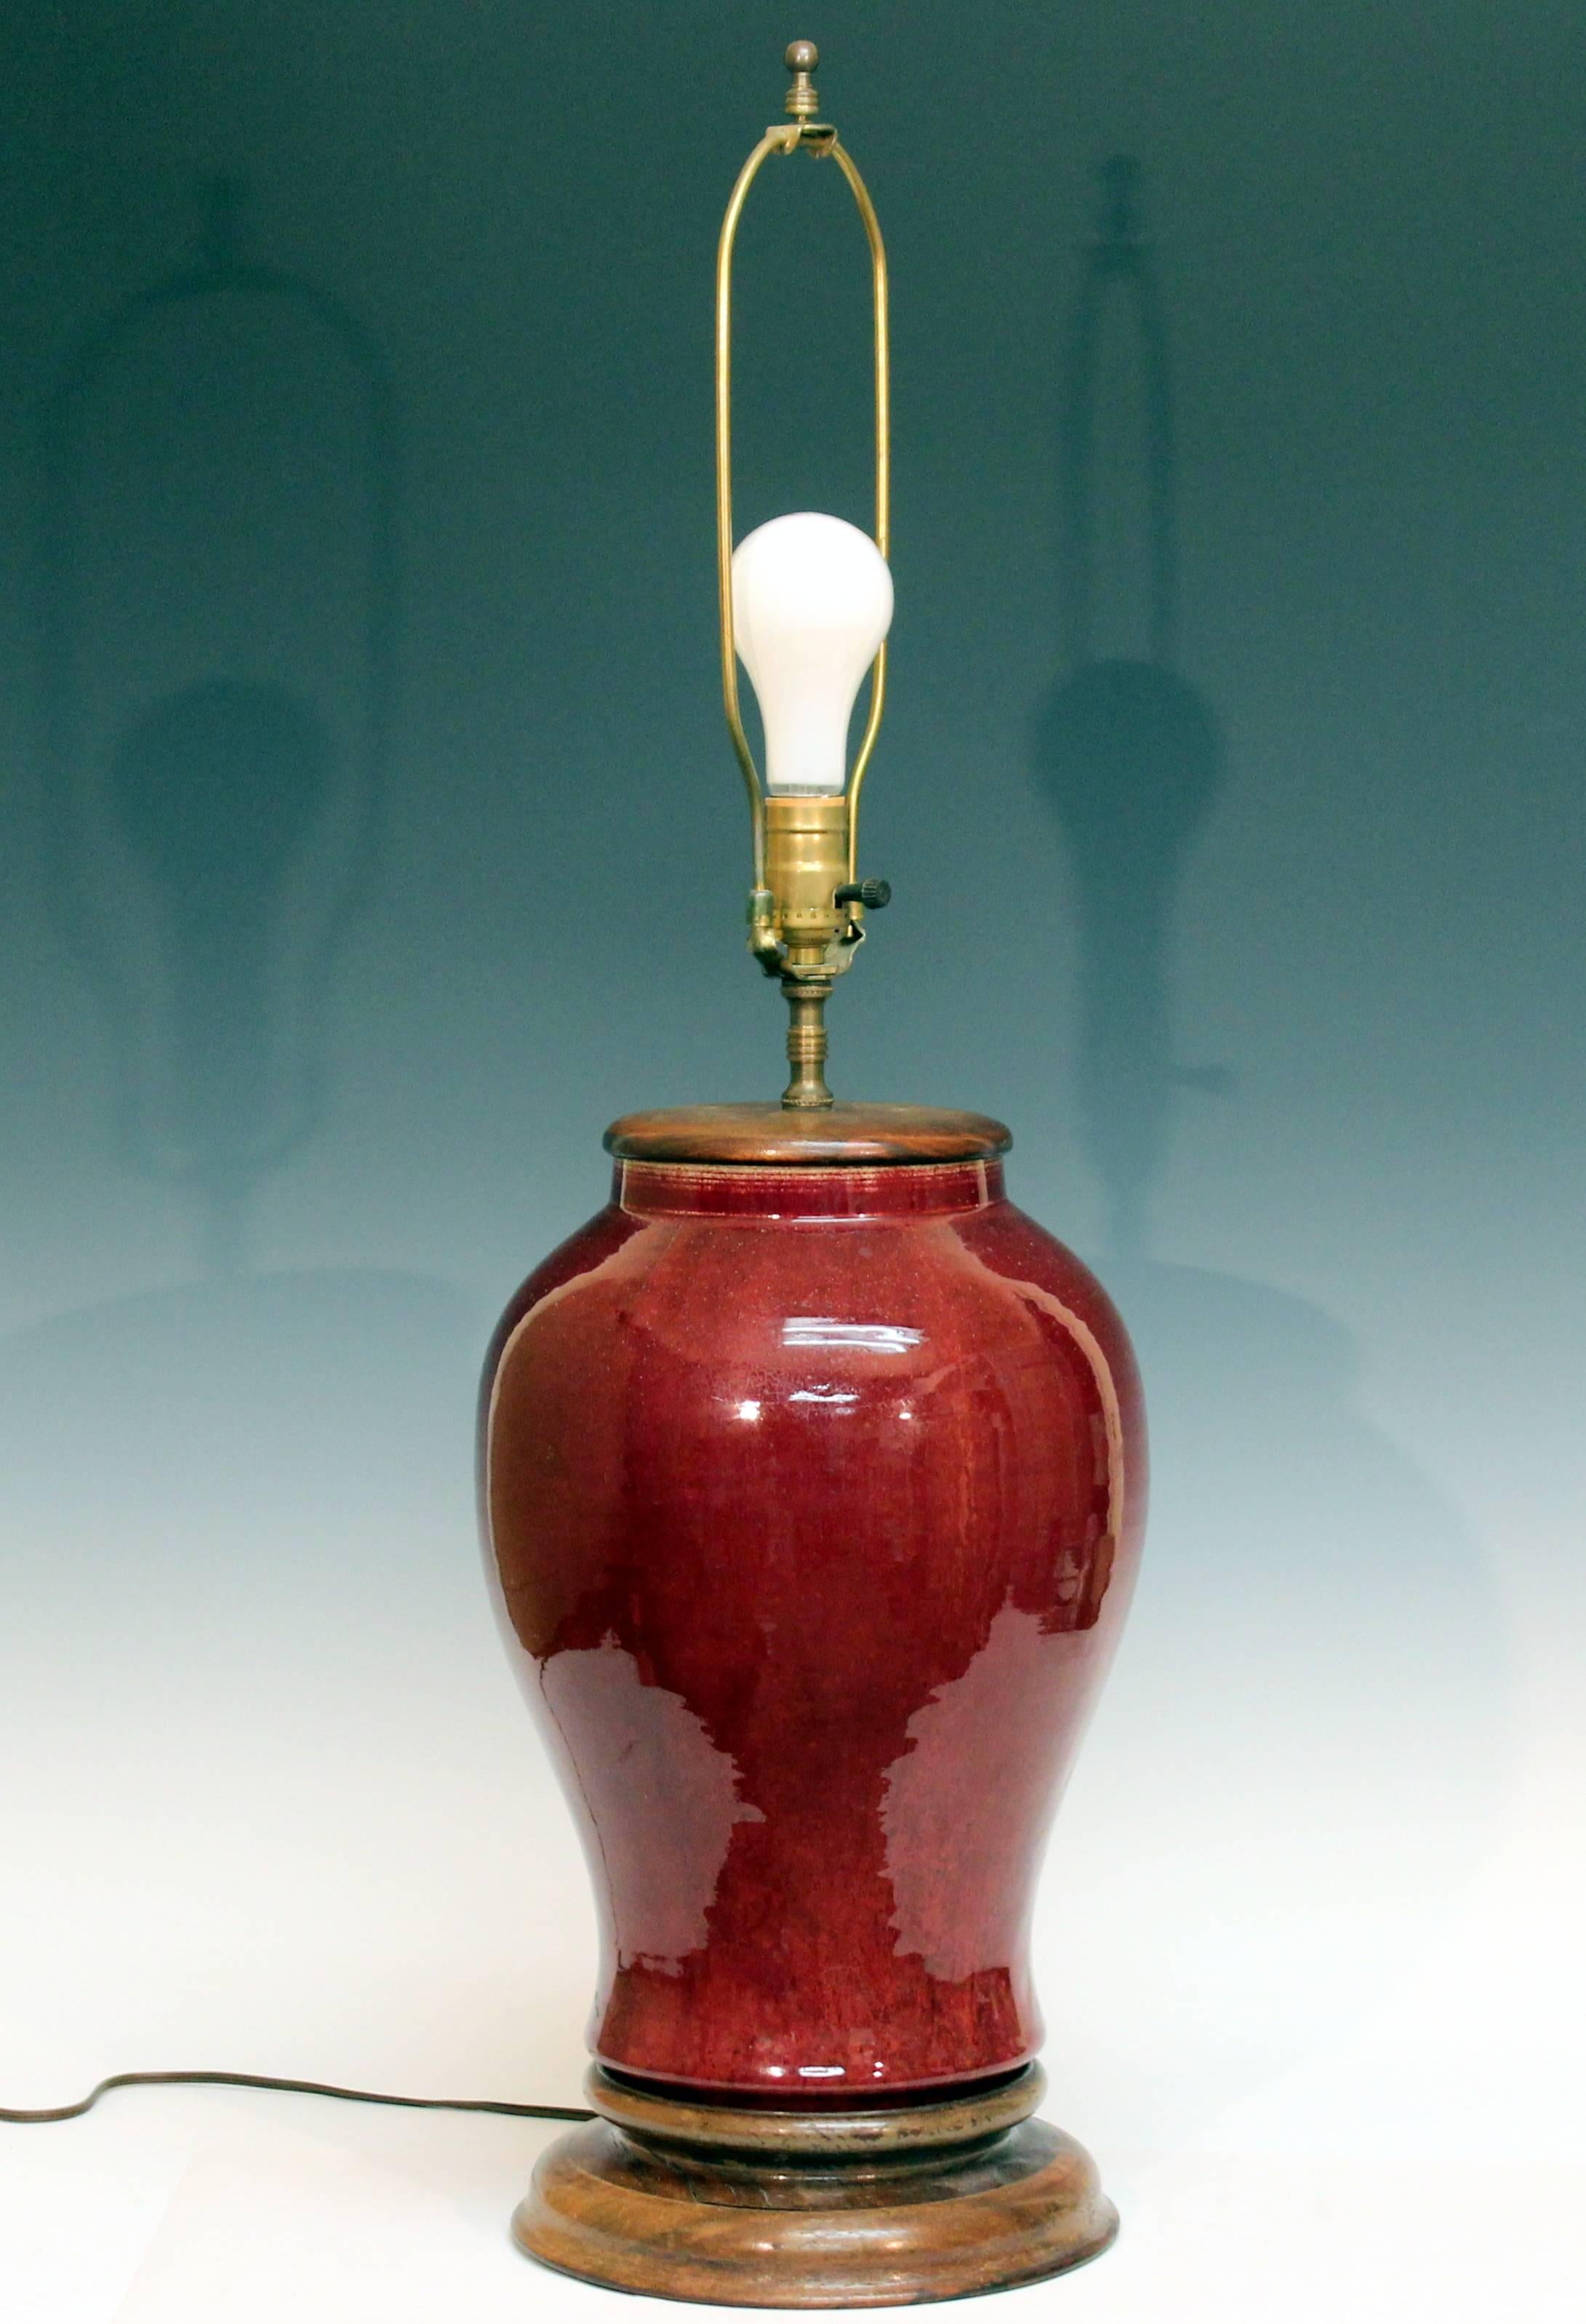 antique vase lamp